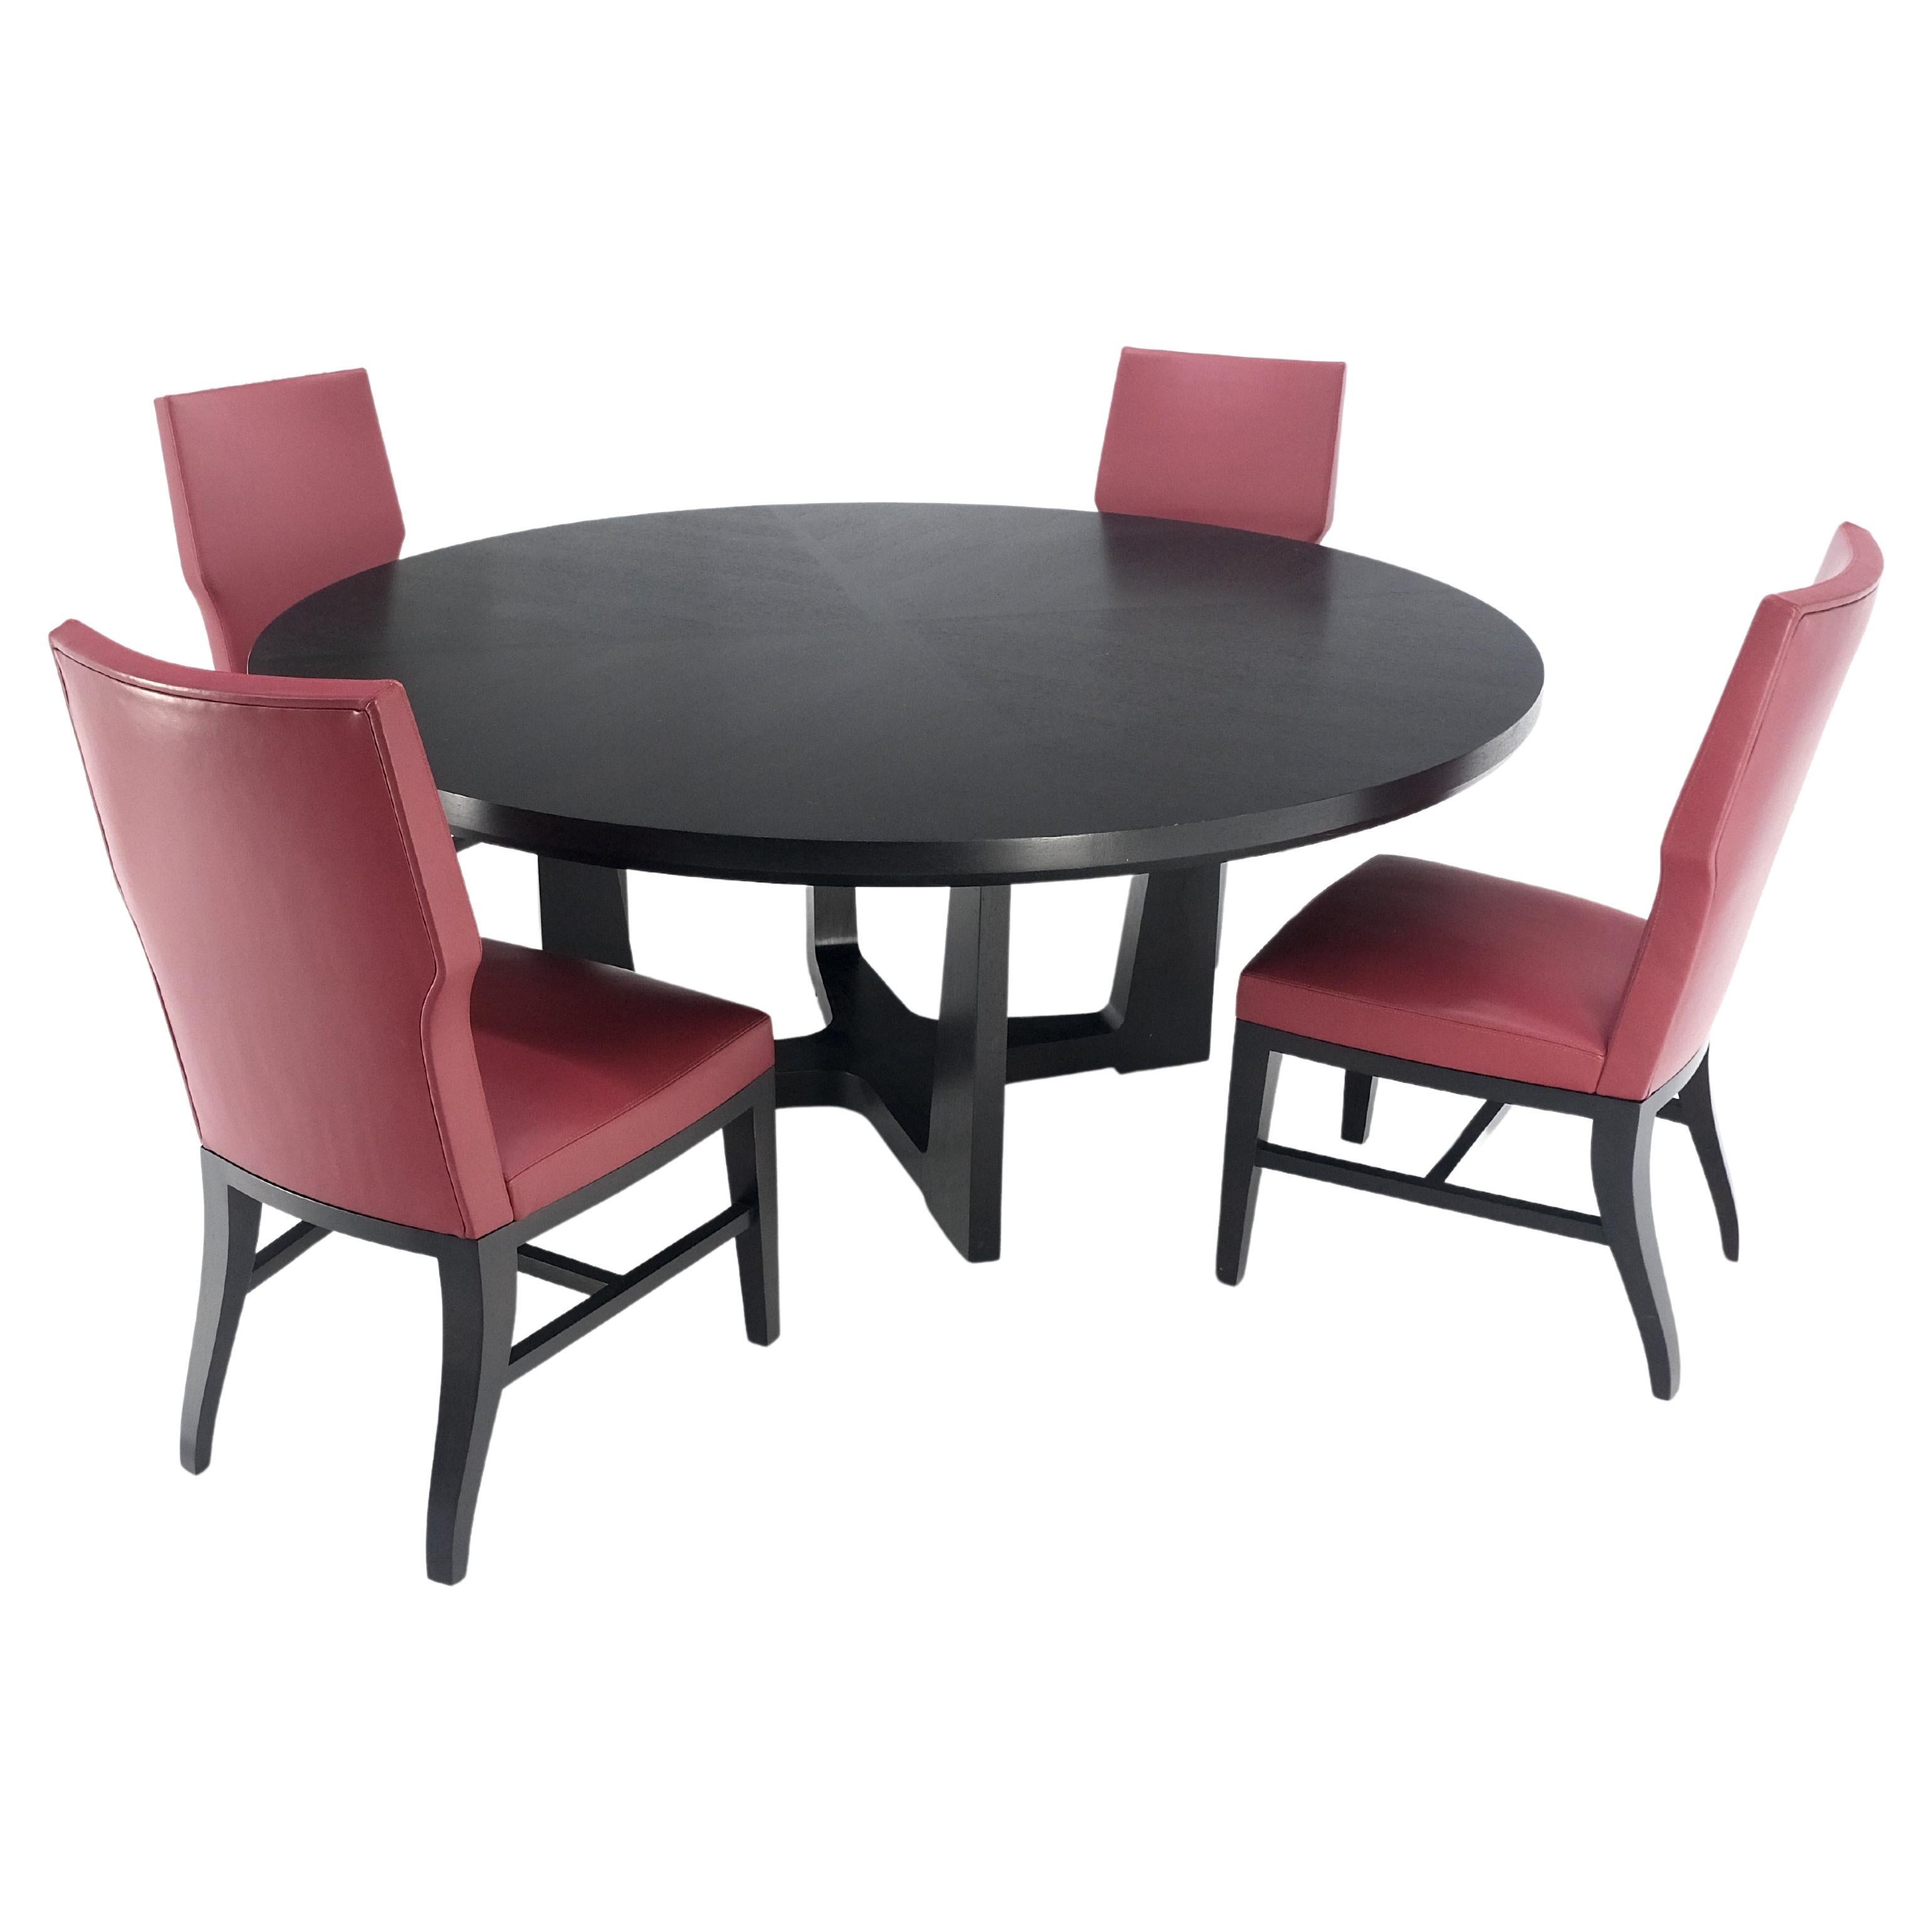 HOLLY HUNT Grande table ronde ébonisée de 6' de diamètre Ensemble de salle à manger en chêne 4 chaises MINT !